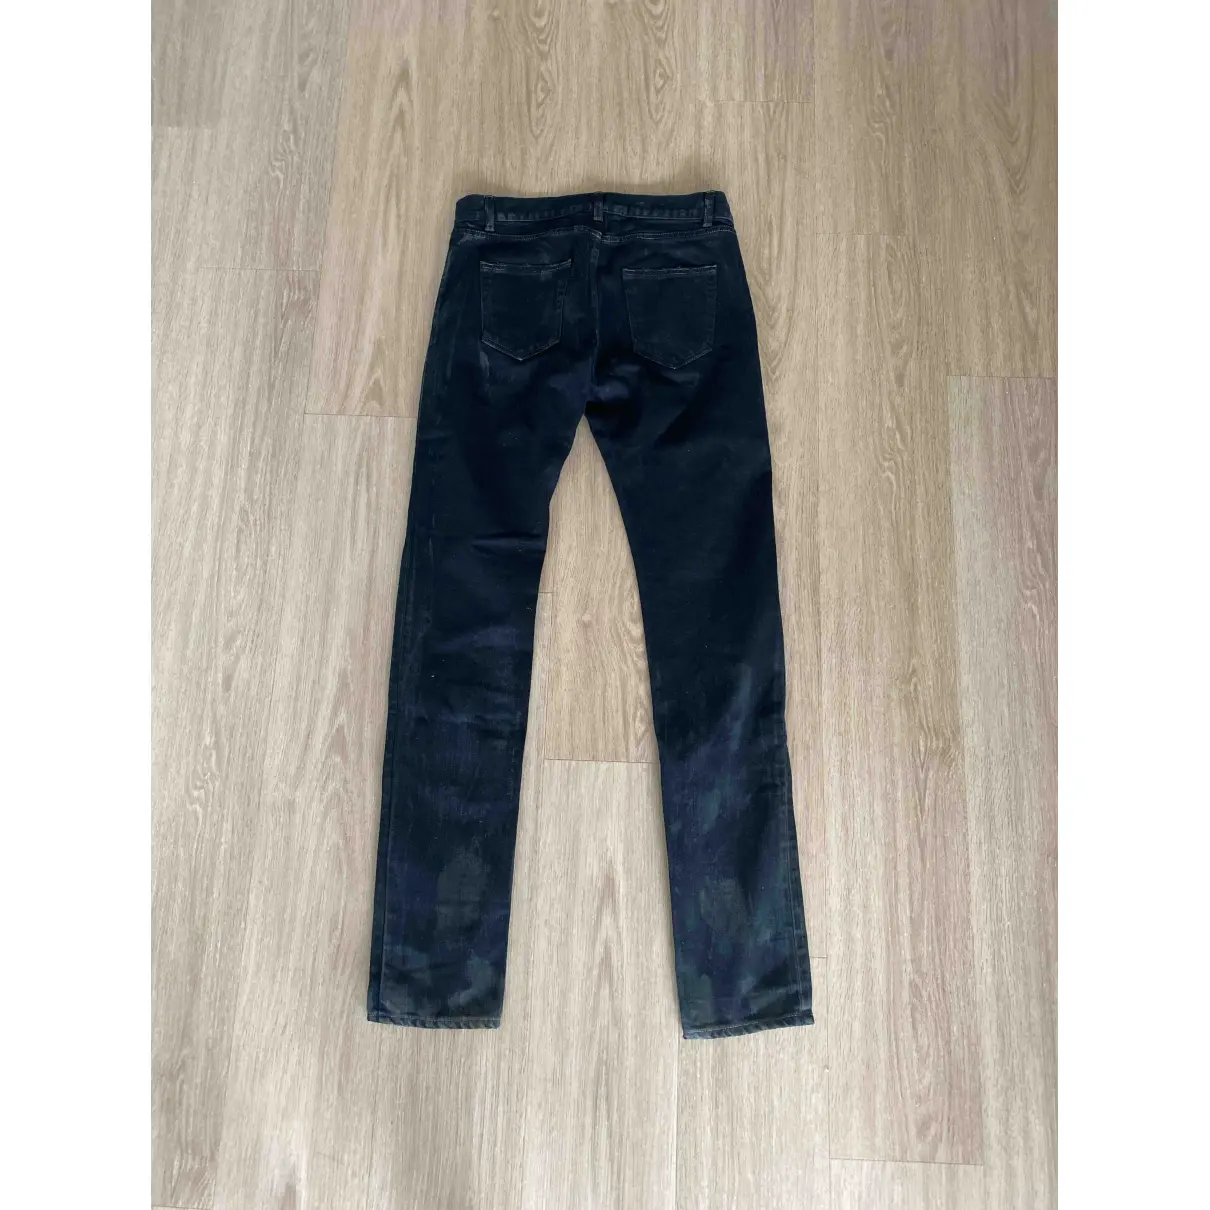 Buy Saint Laurent Jeans online